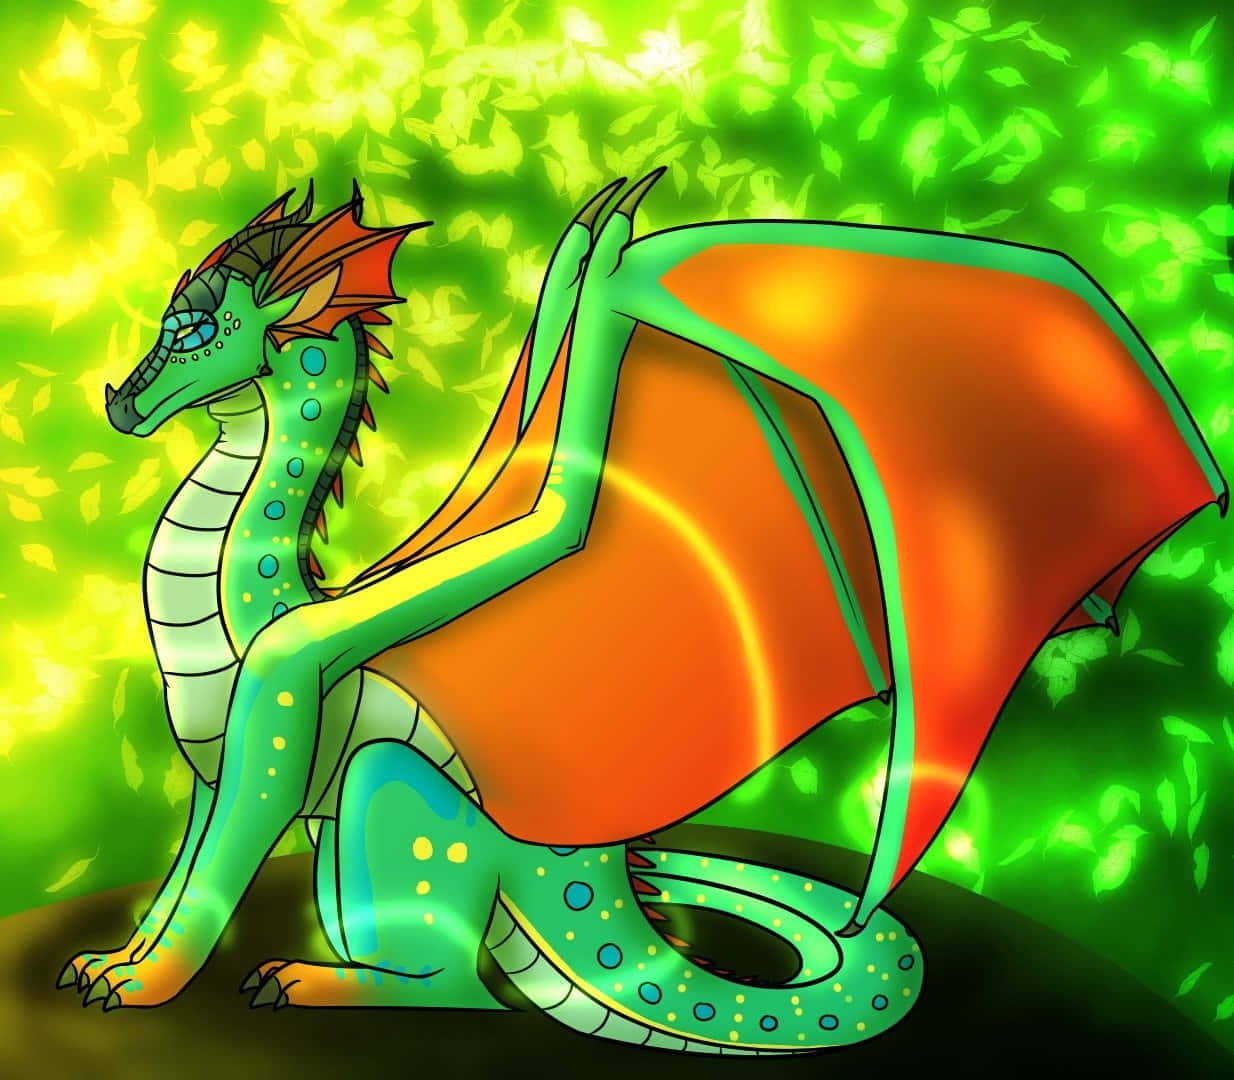 Captivating Artwork - Wings Of Fire Dragons in Full Splendor